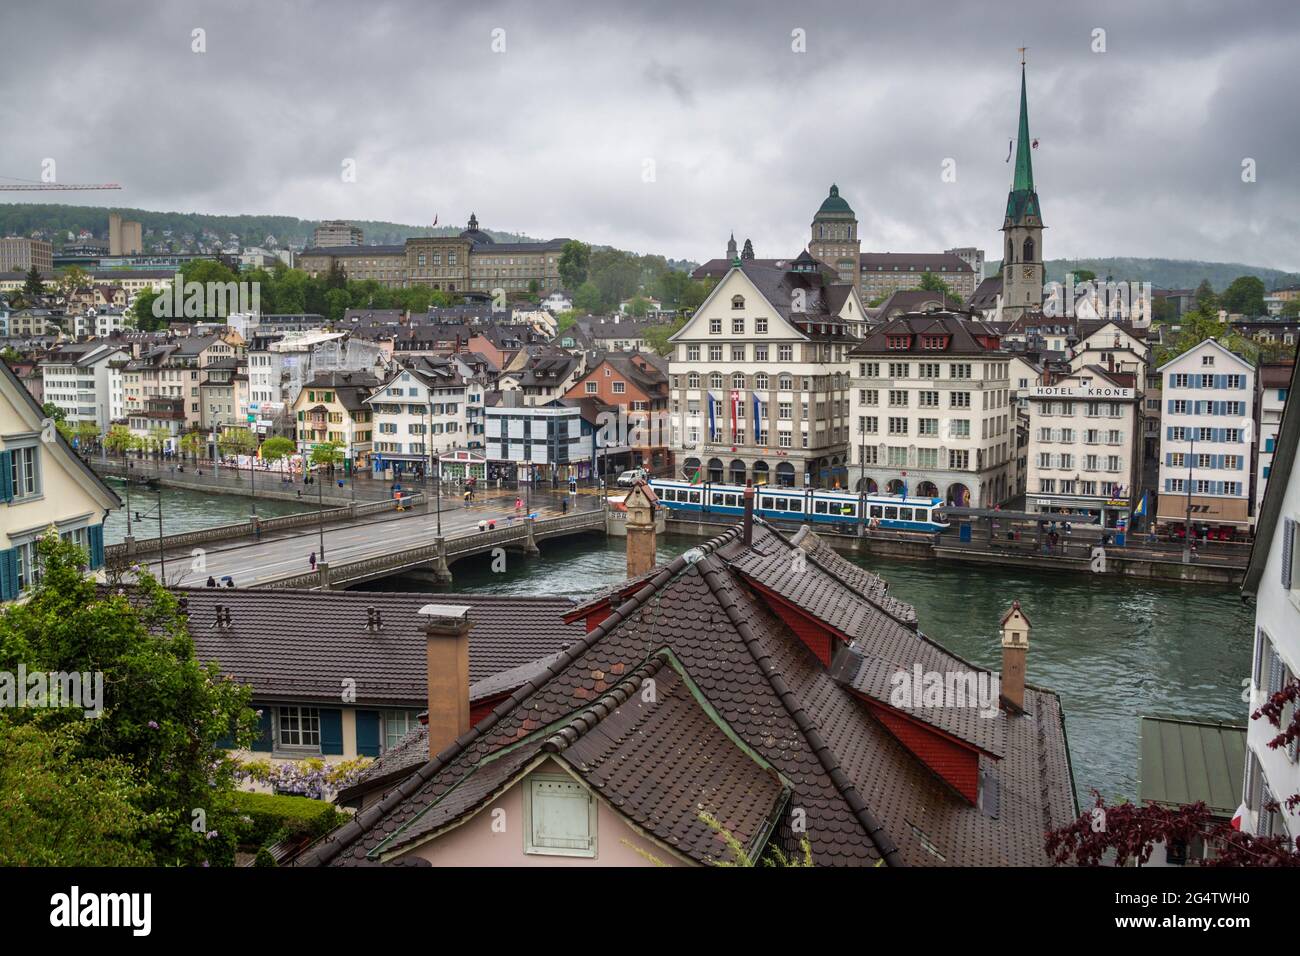 ZURICH - AVRIL 28 : vue sur une ville le 28 avril 2014 à Zurich, Suisse. Zurich est la plus grande ville de Suisse et la capitale du canton de Banque D'Images